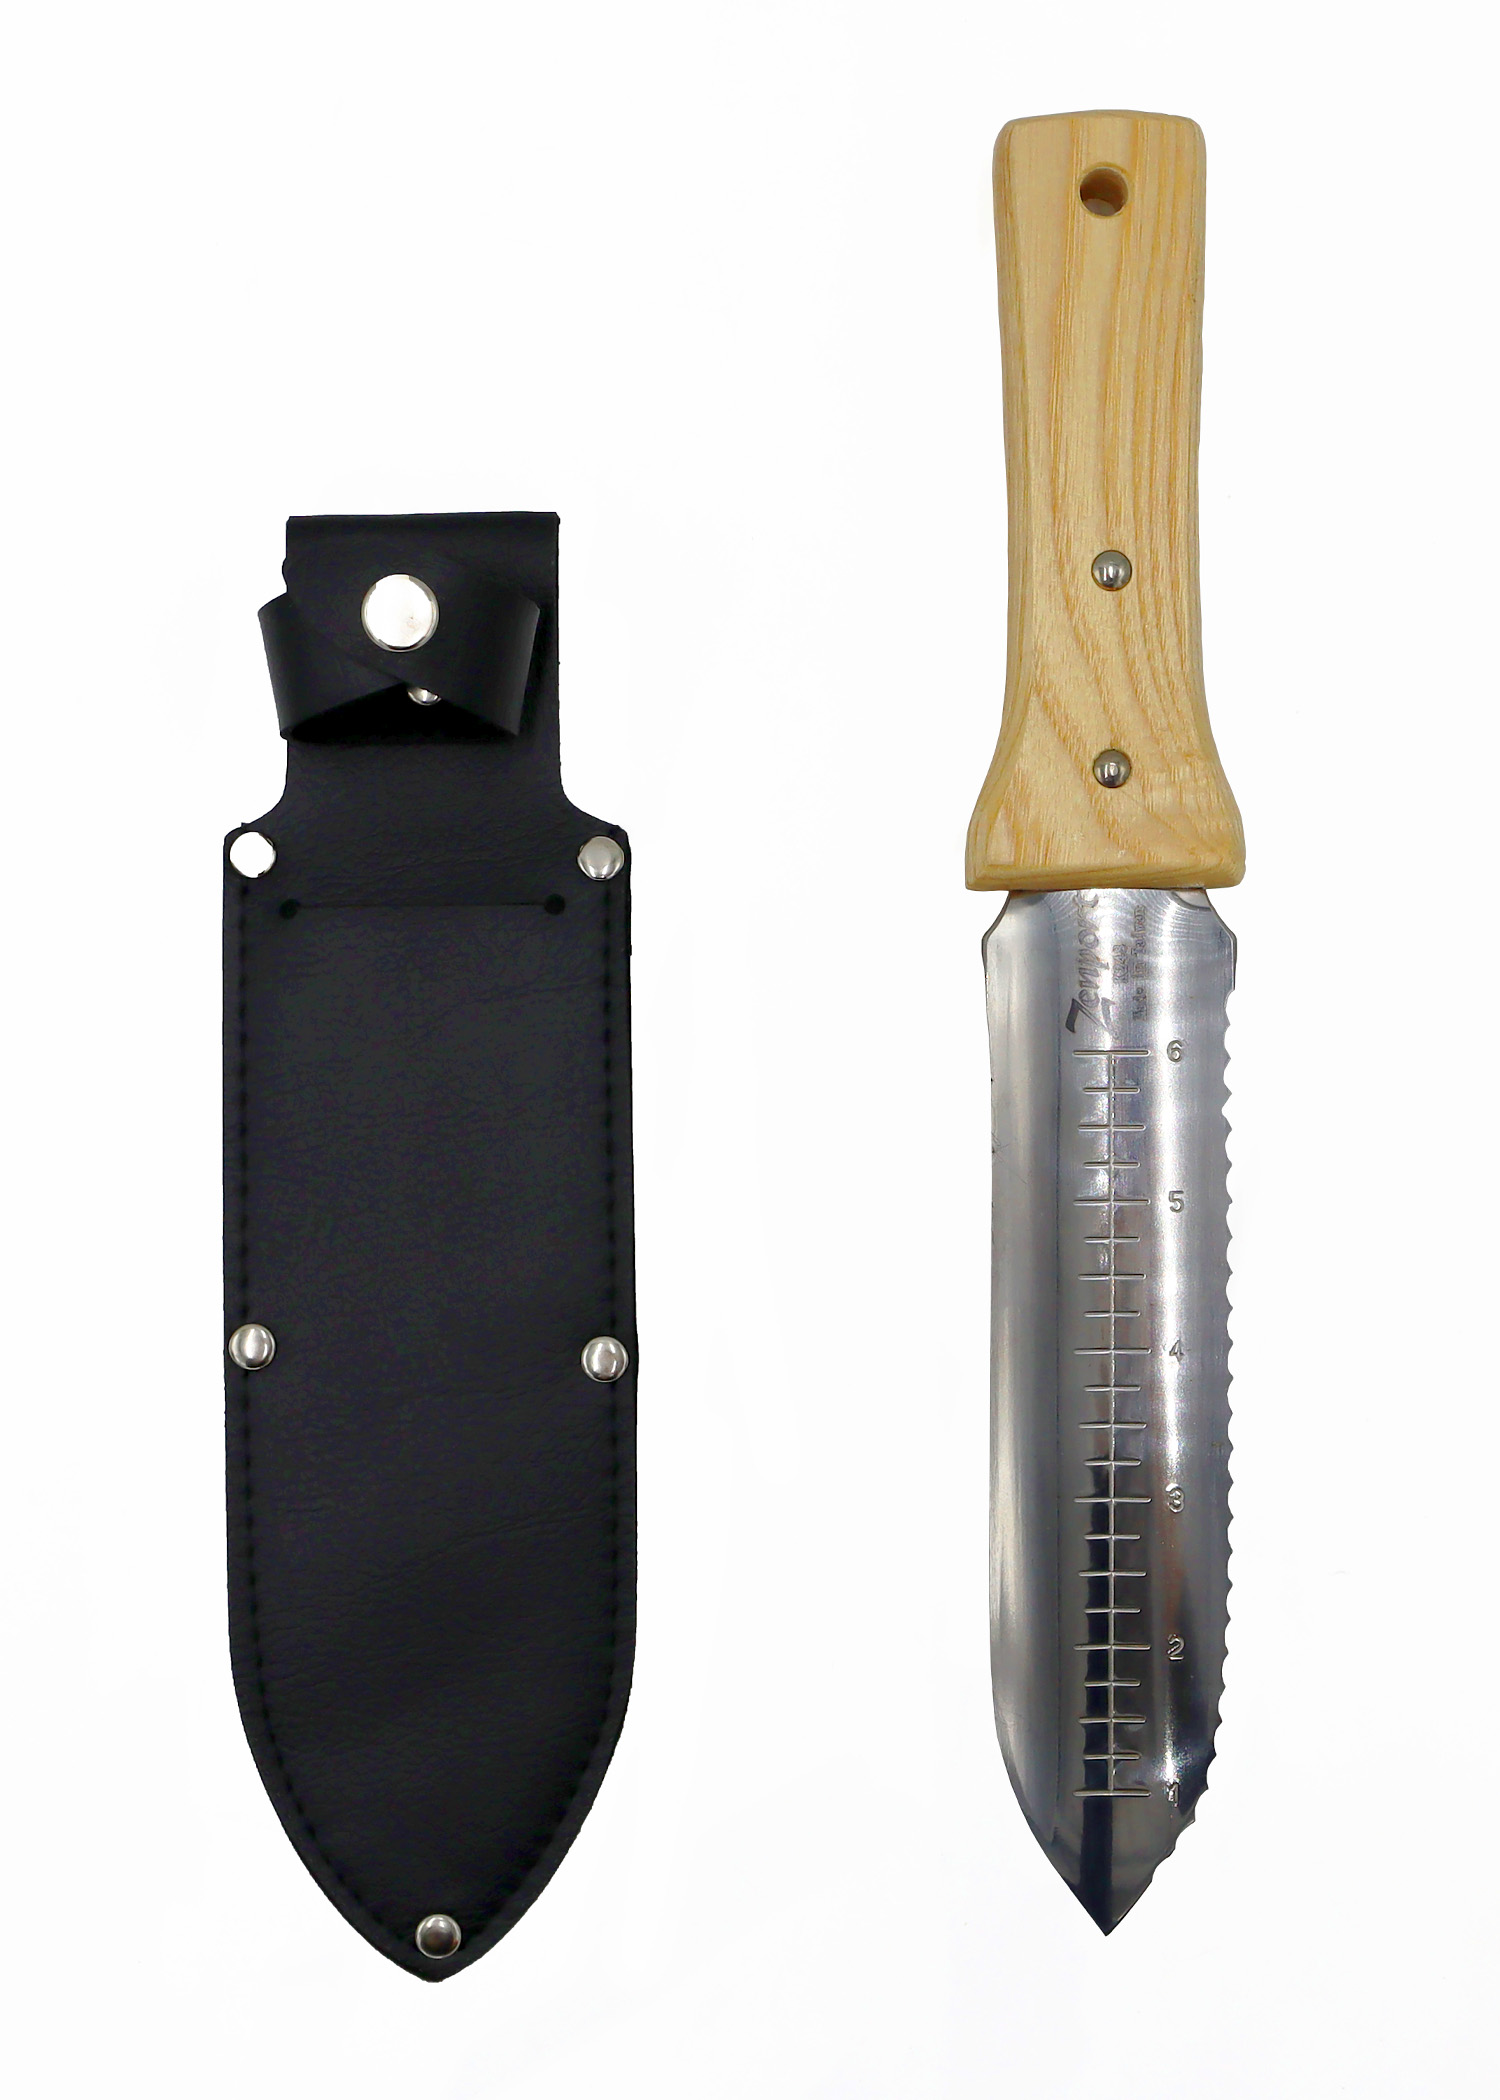 Zenport Soil Knife K248 Deluxe ZenBori Soil Knife Wooden Handle with Sheath, Ultimate Gardening Tool, Japanese Hori Hori Knives